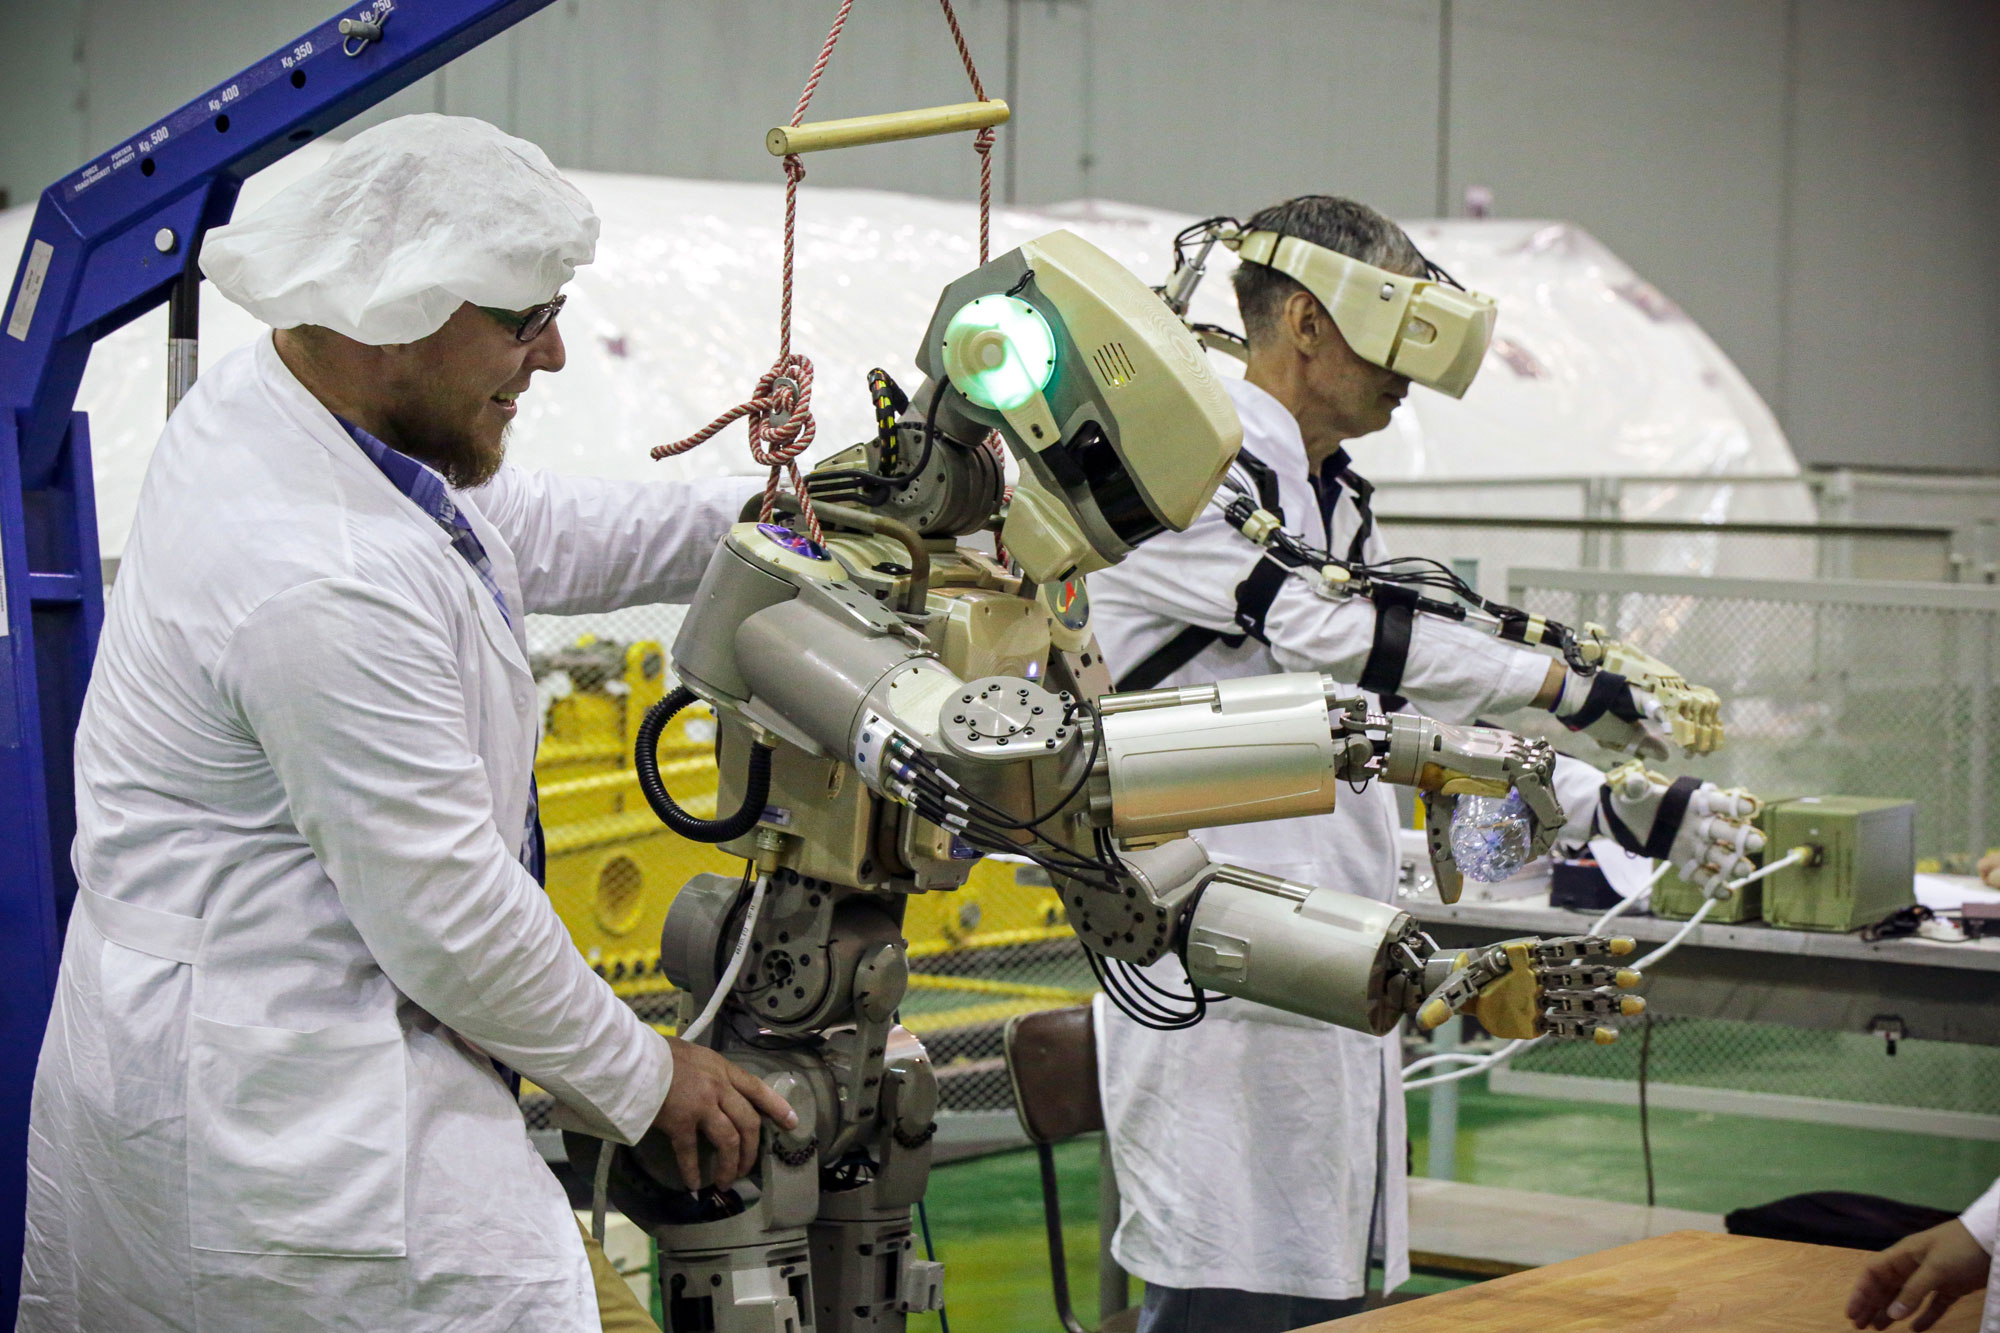 Az oroszok az űrbe küldik Fedort, a humanoid robotot - fotók - Blikk